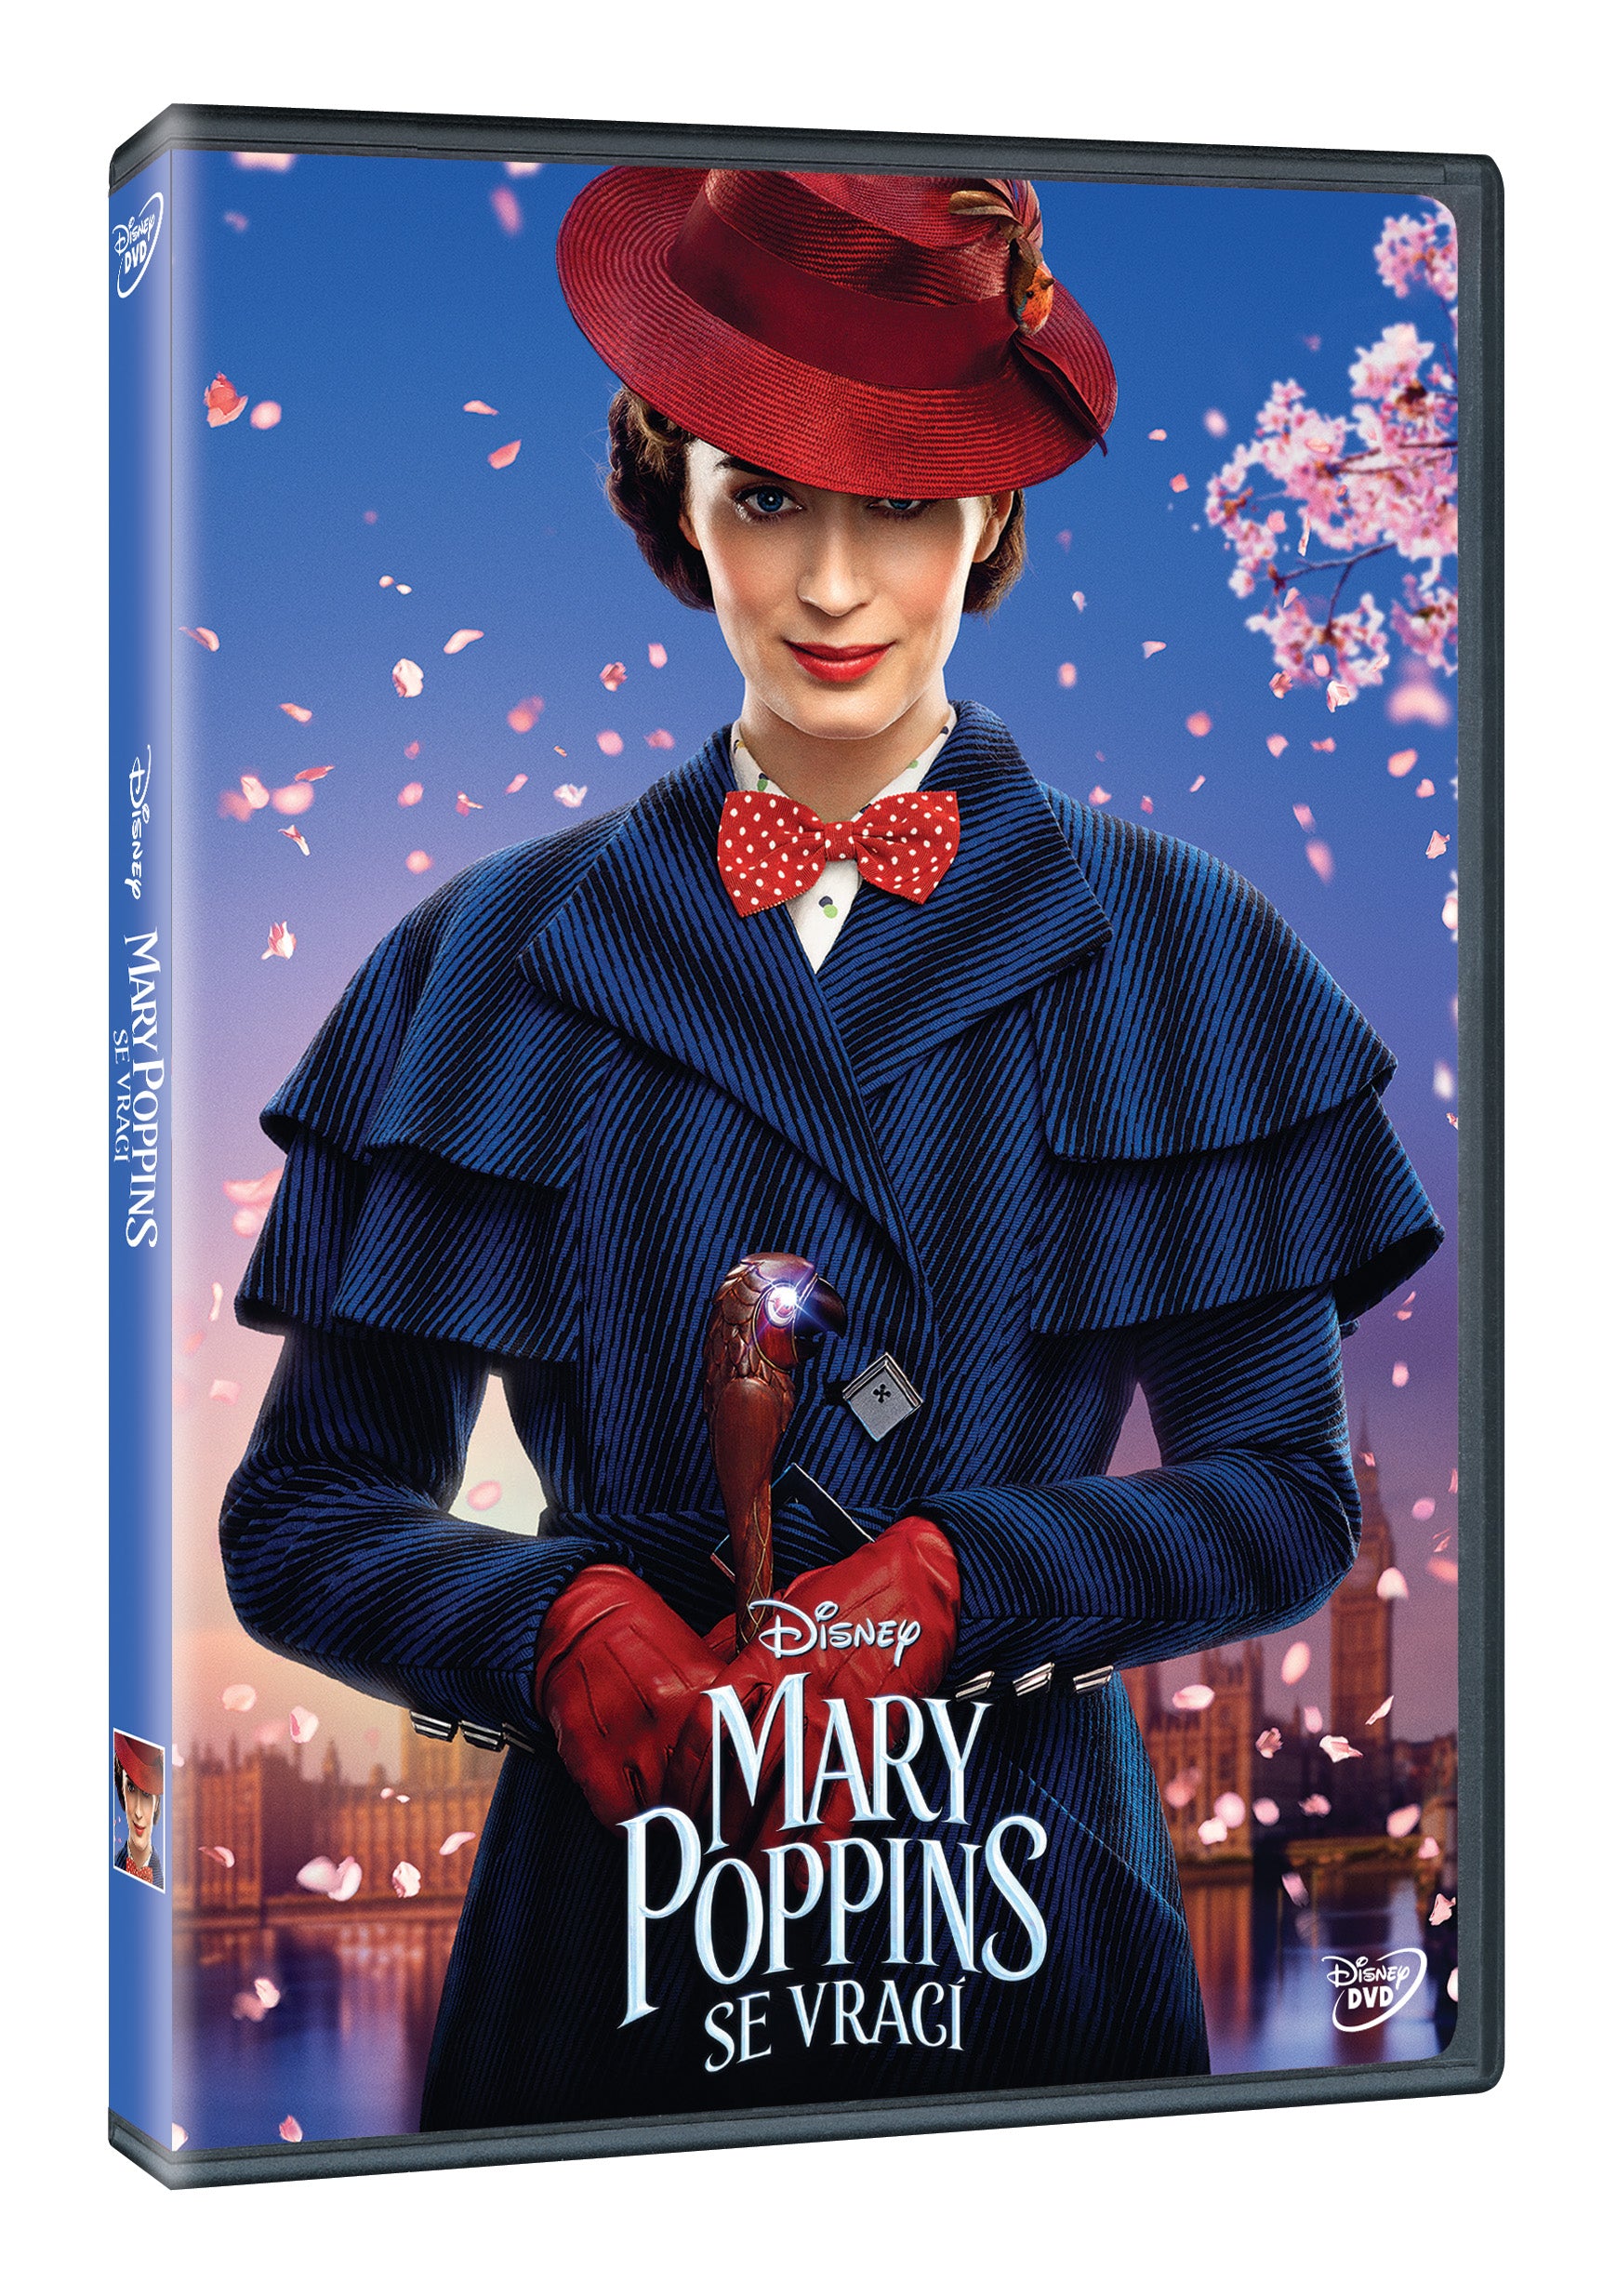 Mary Poppins sieht DVD aus / Mary Poppins kehrt zurück